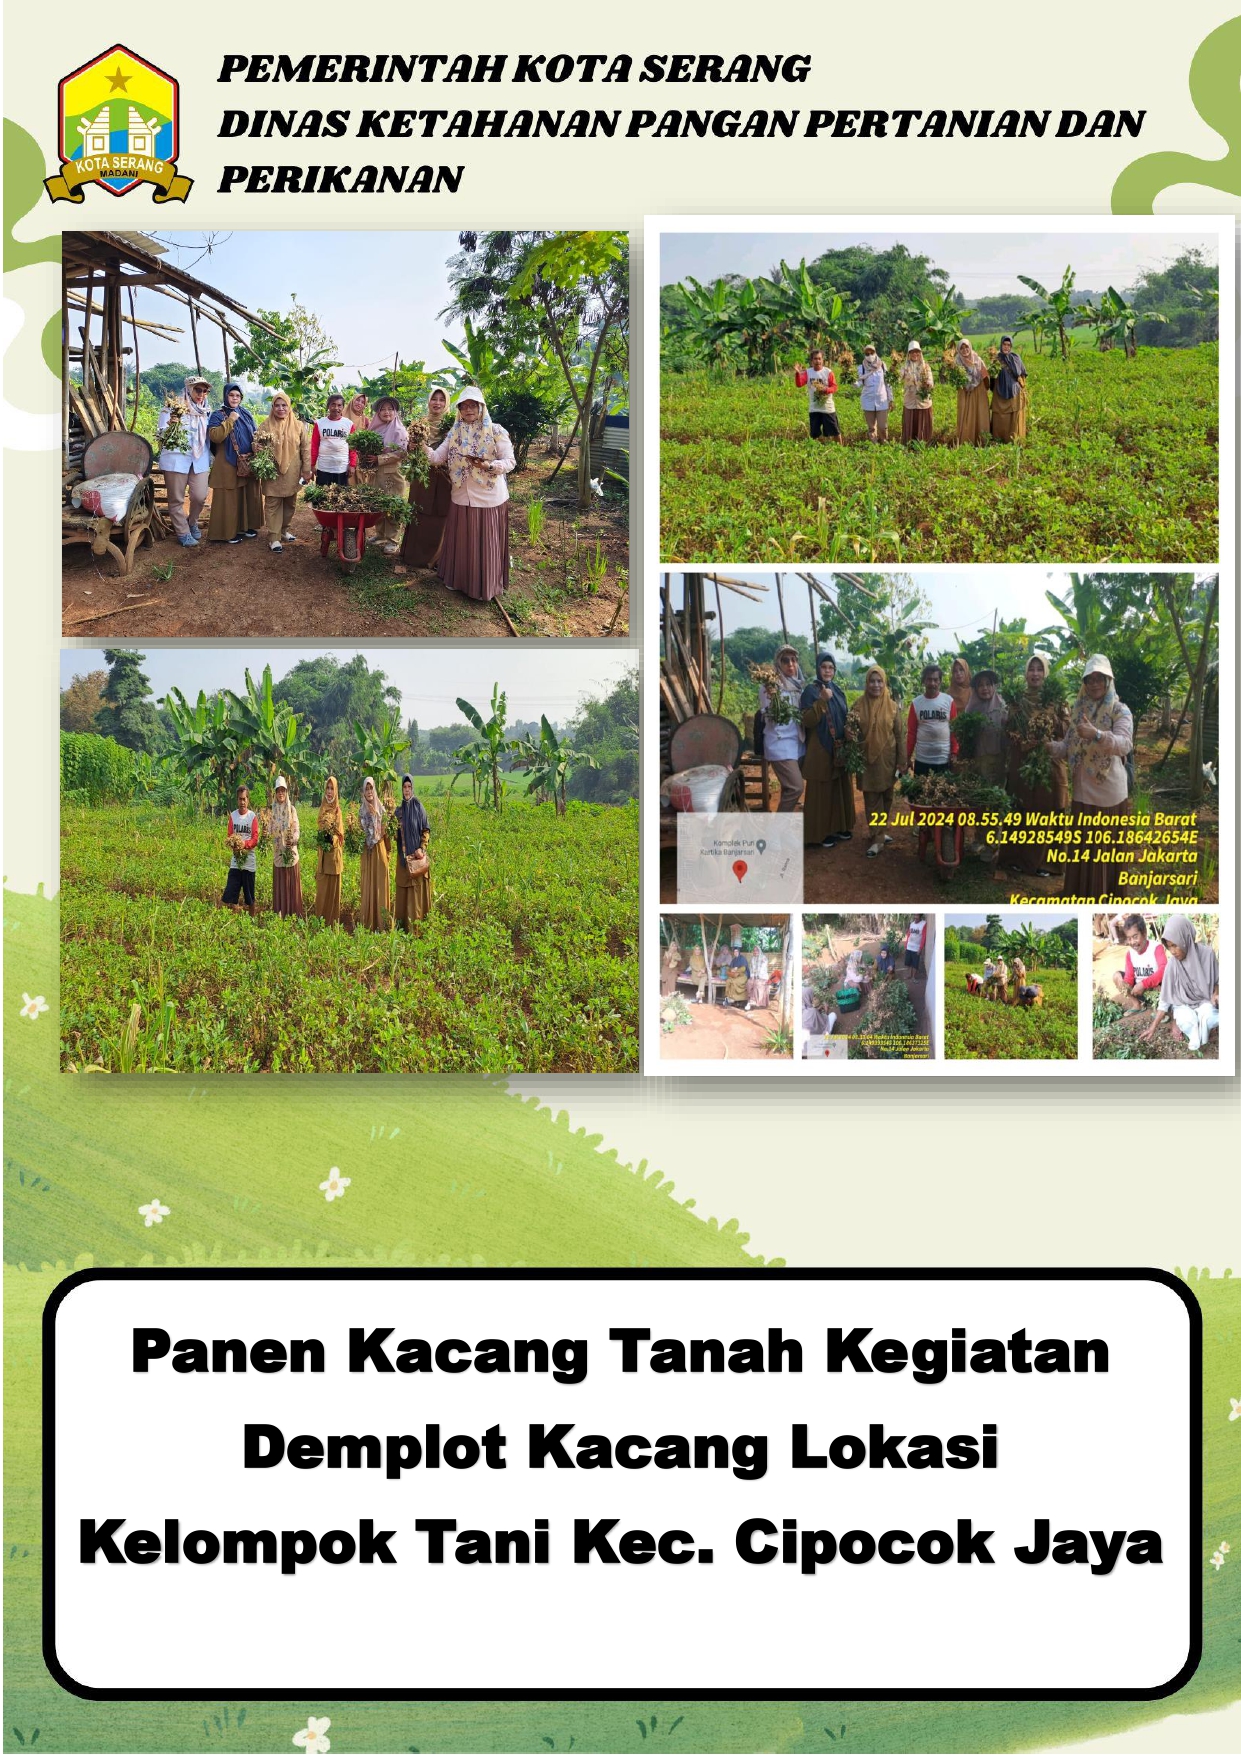 Panen Kacang Tanah Kegiatan Demplot Kacang Lokasi Kelompok Tani Kec. Cipocok Jaya